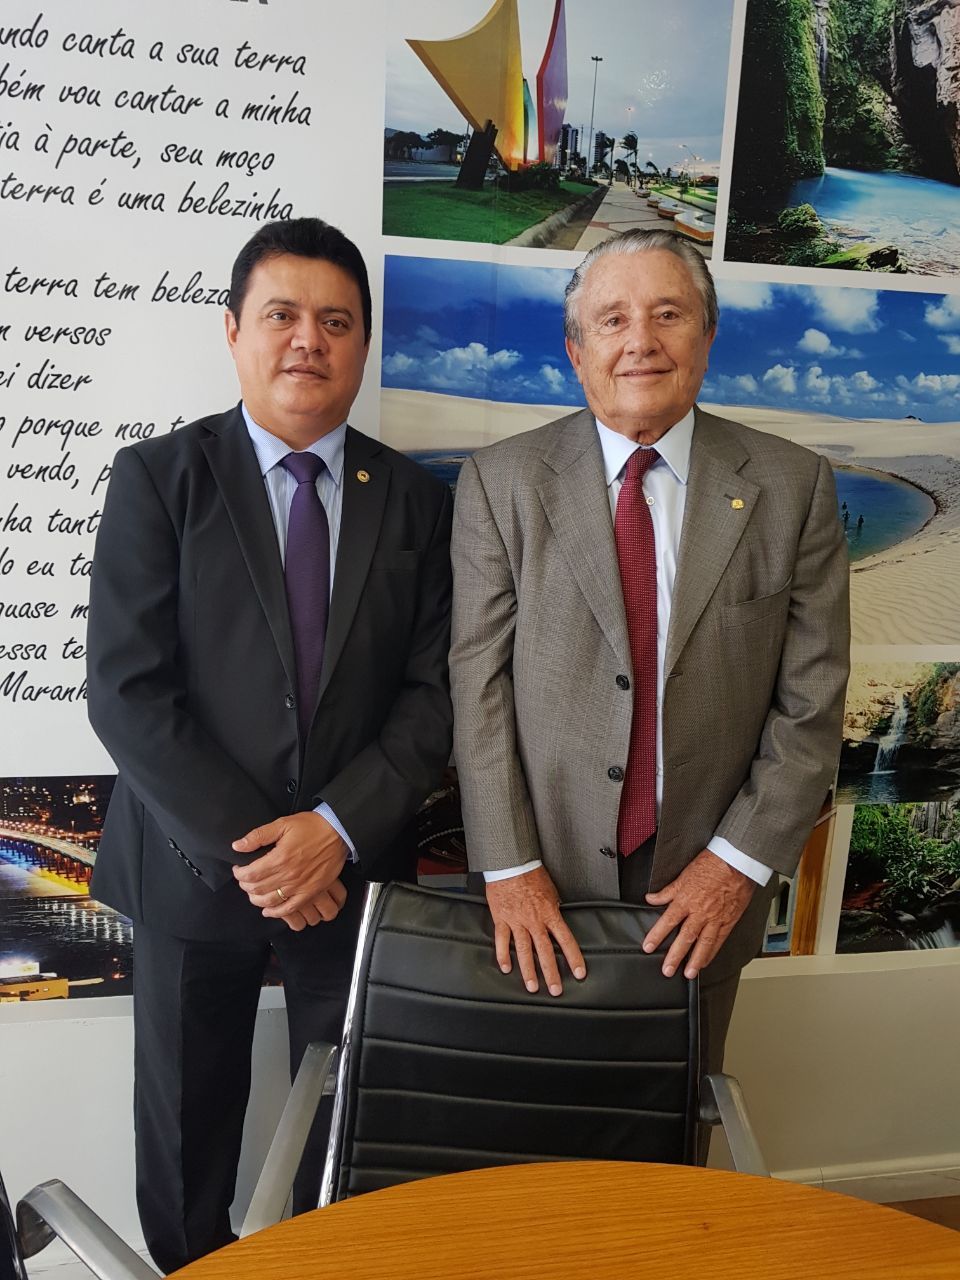 Rigo Teles promove reunião de prefeitos com Zé Reinaldo Tavares e pede benefícios para o povo 